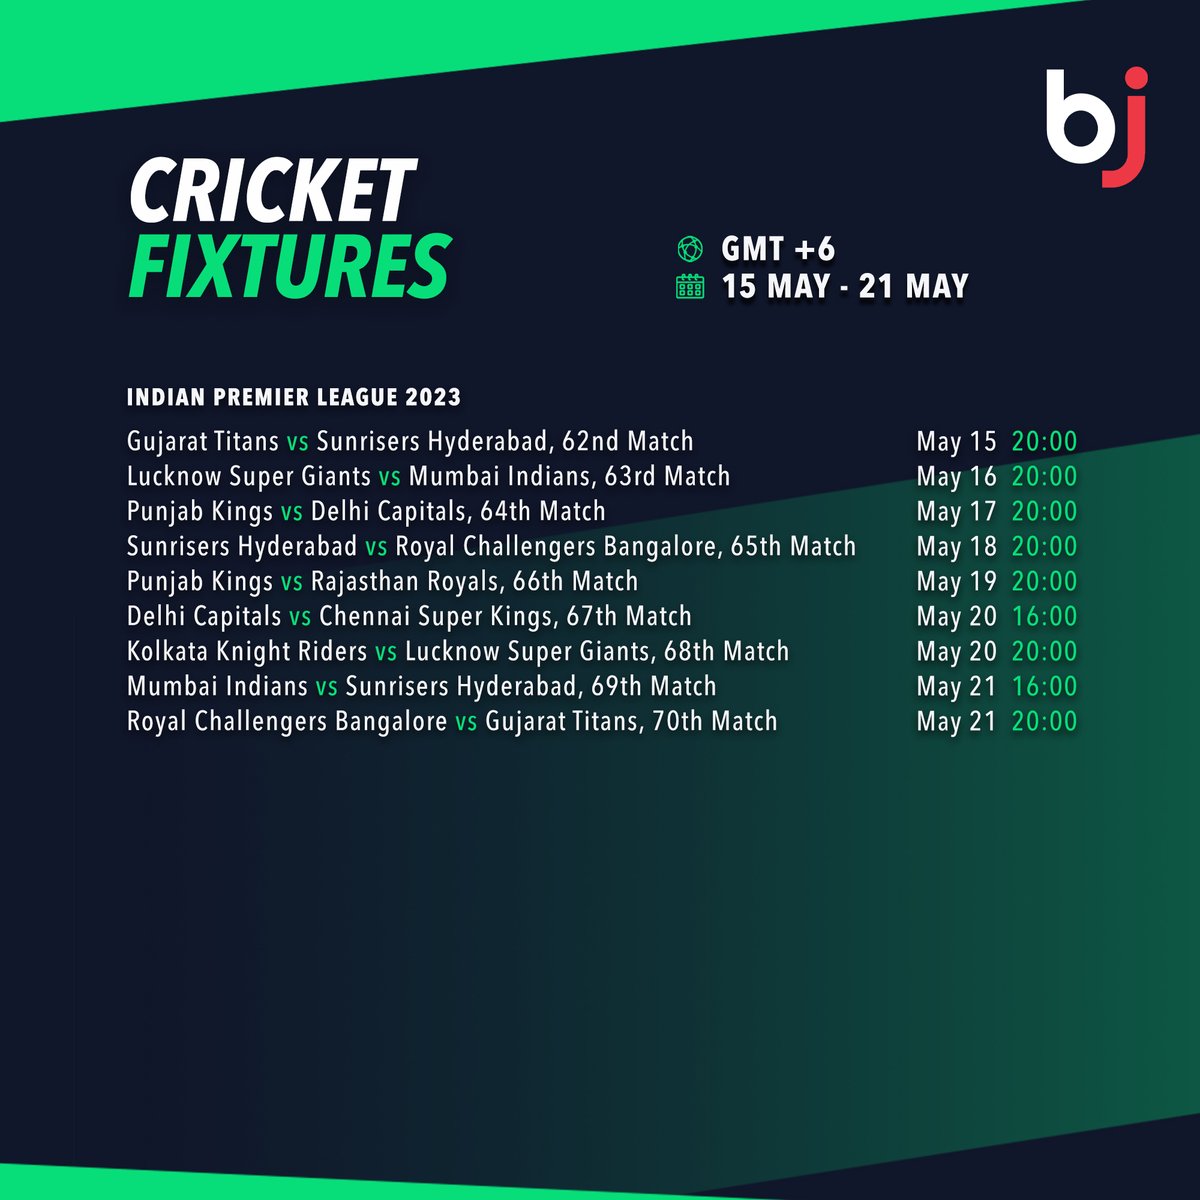 এক পলকে দেখে নিন আগামি সপ্তাহের আইপিএল এর সময়সূচী শুধুমাত্র Baji-তে

 💥এখনই  BjBaji5.com  এর সদস্য হিসাবে সাইন-আপ করুন!! 💥

#Baji #BJ #Sports #Cricket #Schedule #CricketFixture #IPL2023